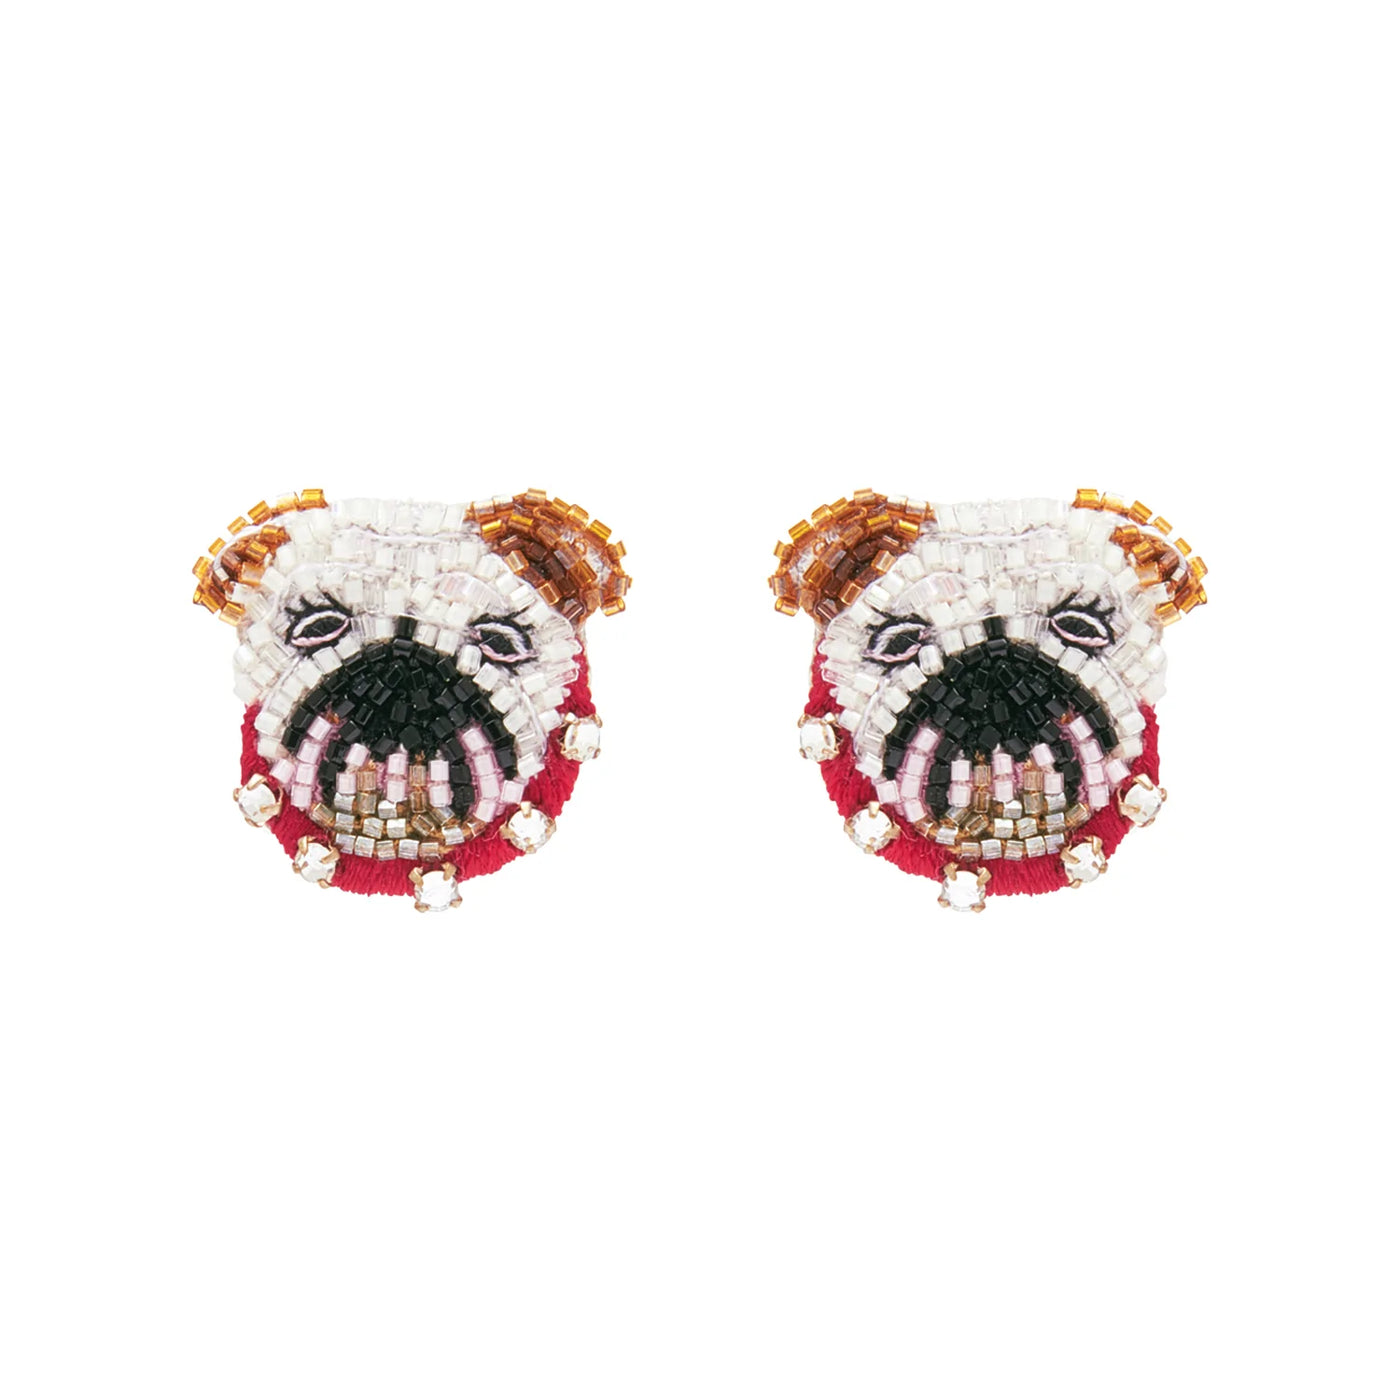 Mignonne Gavigan Bulldog Stud Earrings